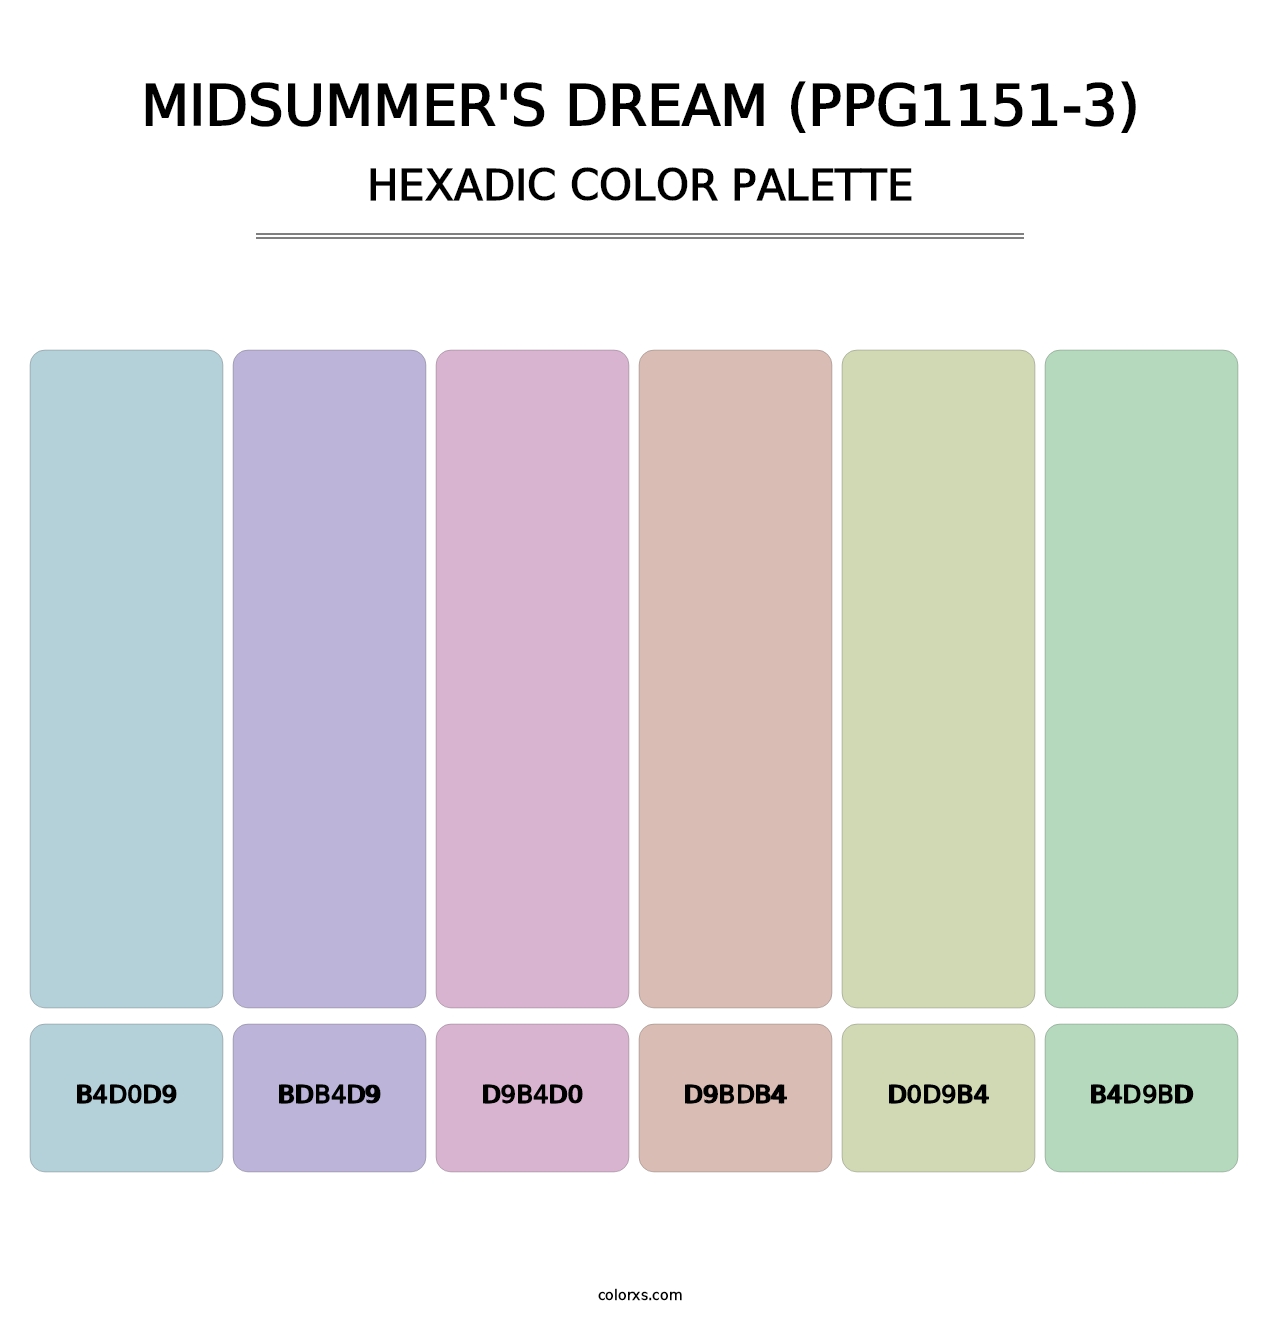 Midsummer's Dream (PPG1151-3) - Hexadic Color Palette